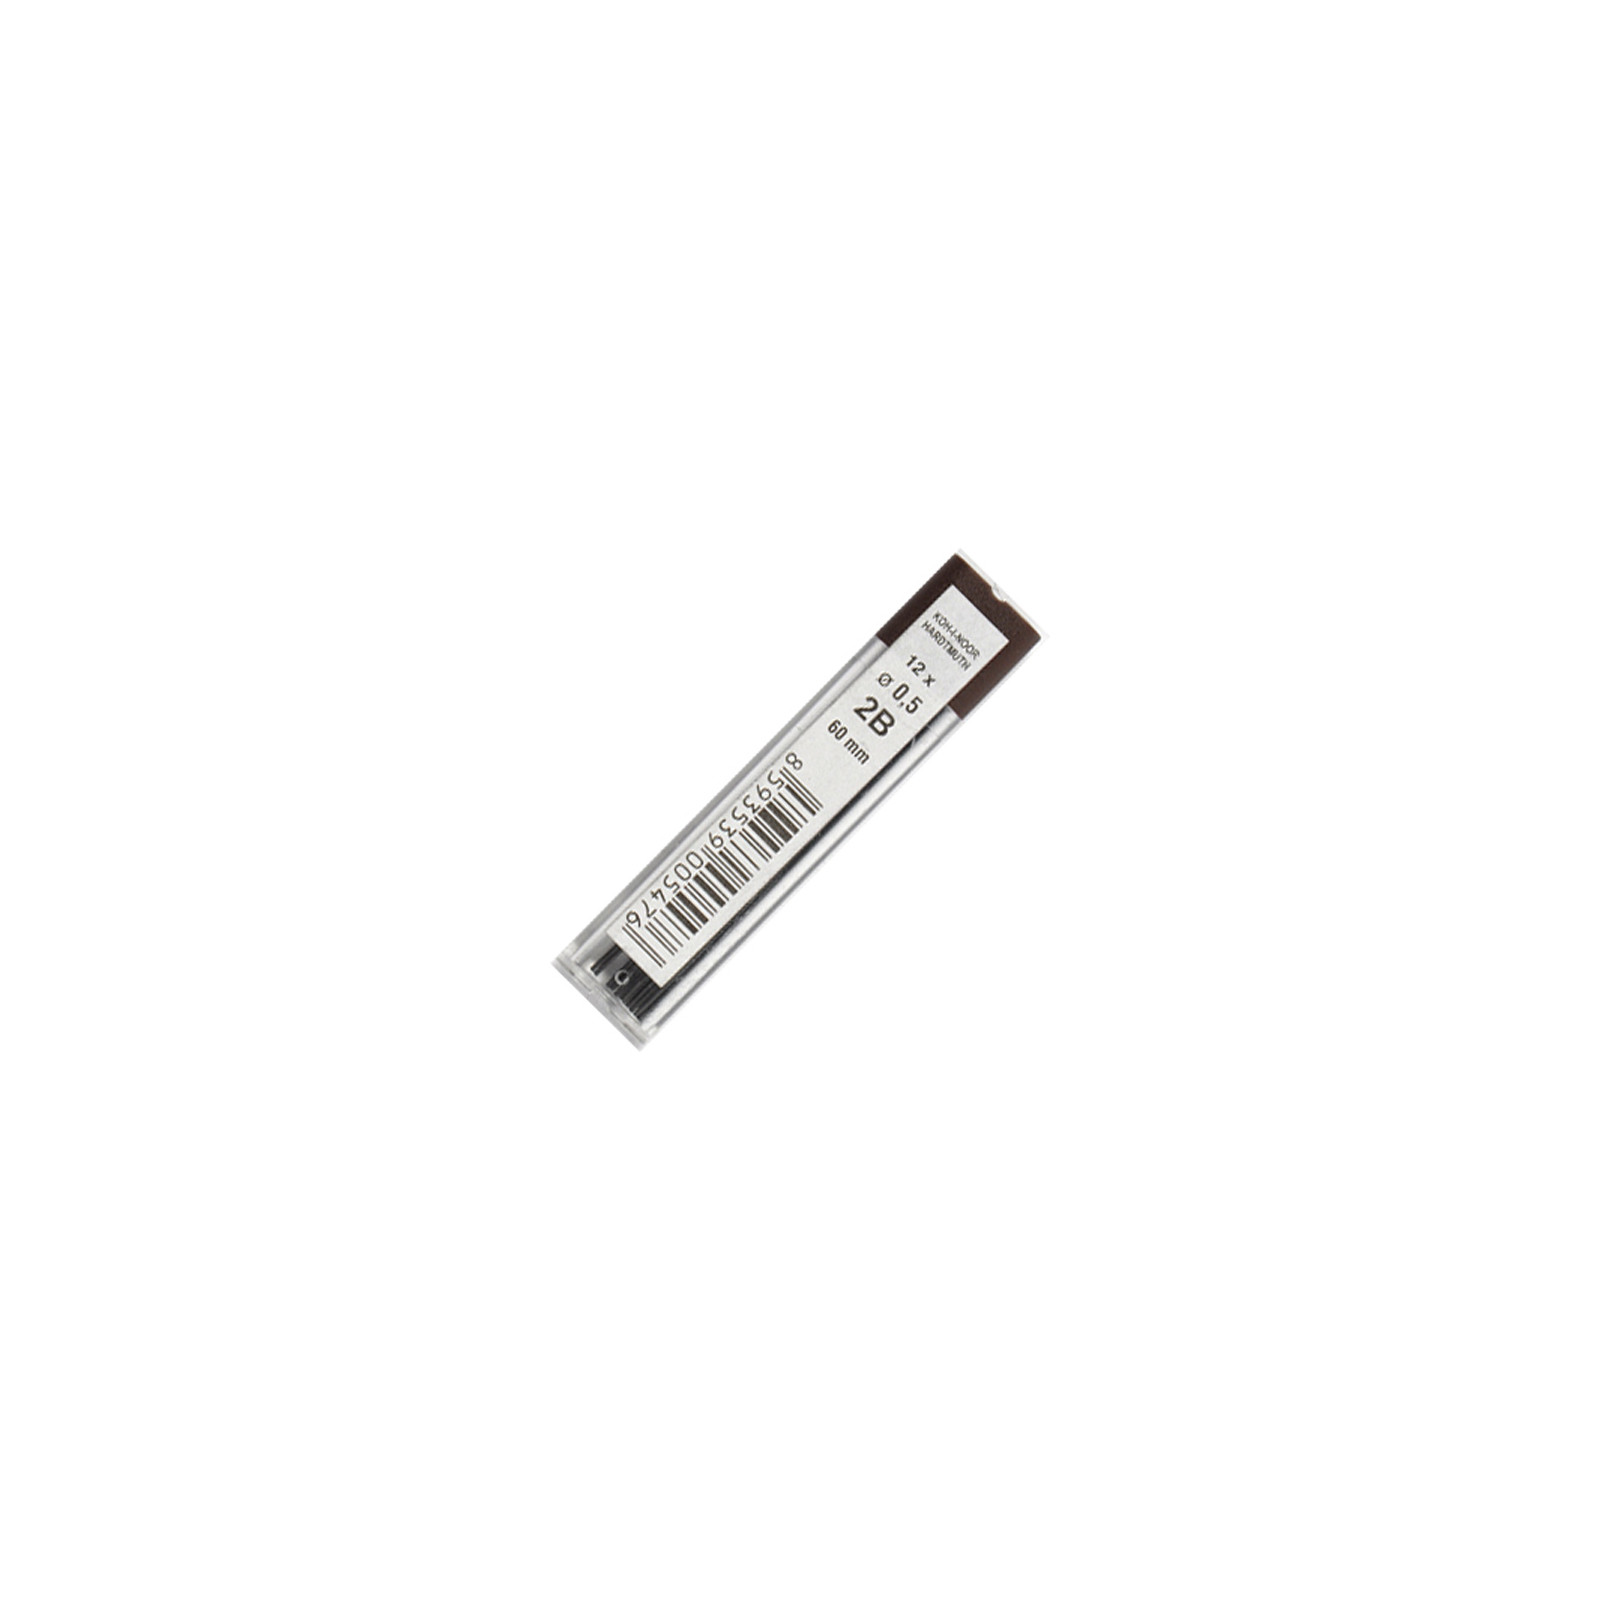 Грифель для механічного олівця Koh-i-Noor 4152.2B 0.5 мм, 12шт (415202B005PK)